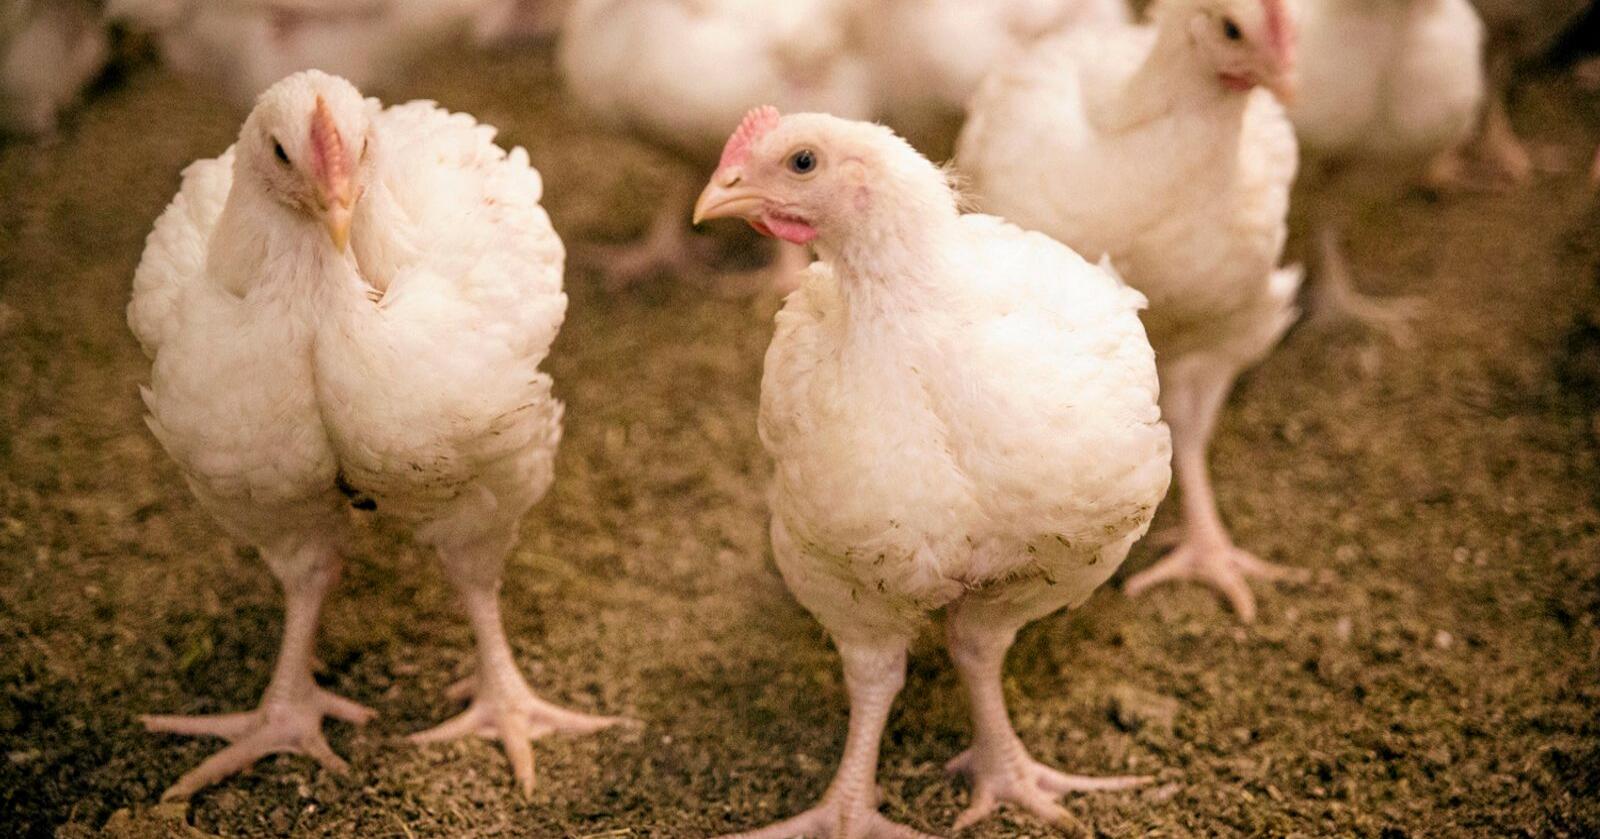 Norsk Kylling ber om dialog med Mattilsynet etter at tilsynsmyndigheten ba dem stanse bruken av en rapport som roste kyllinghybriden som eksklusivt brukes i deres produksjon. Foto: Dyrevernalliansen